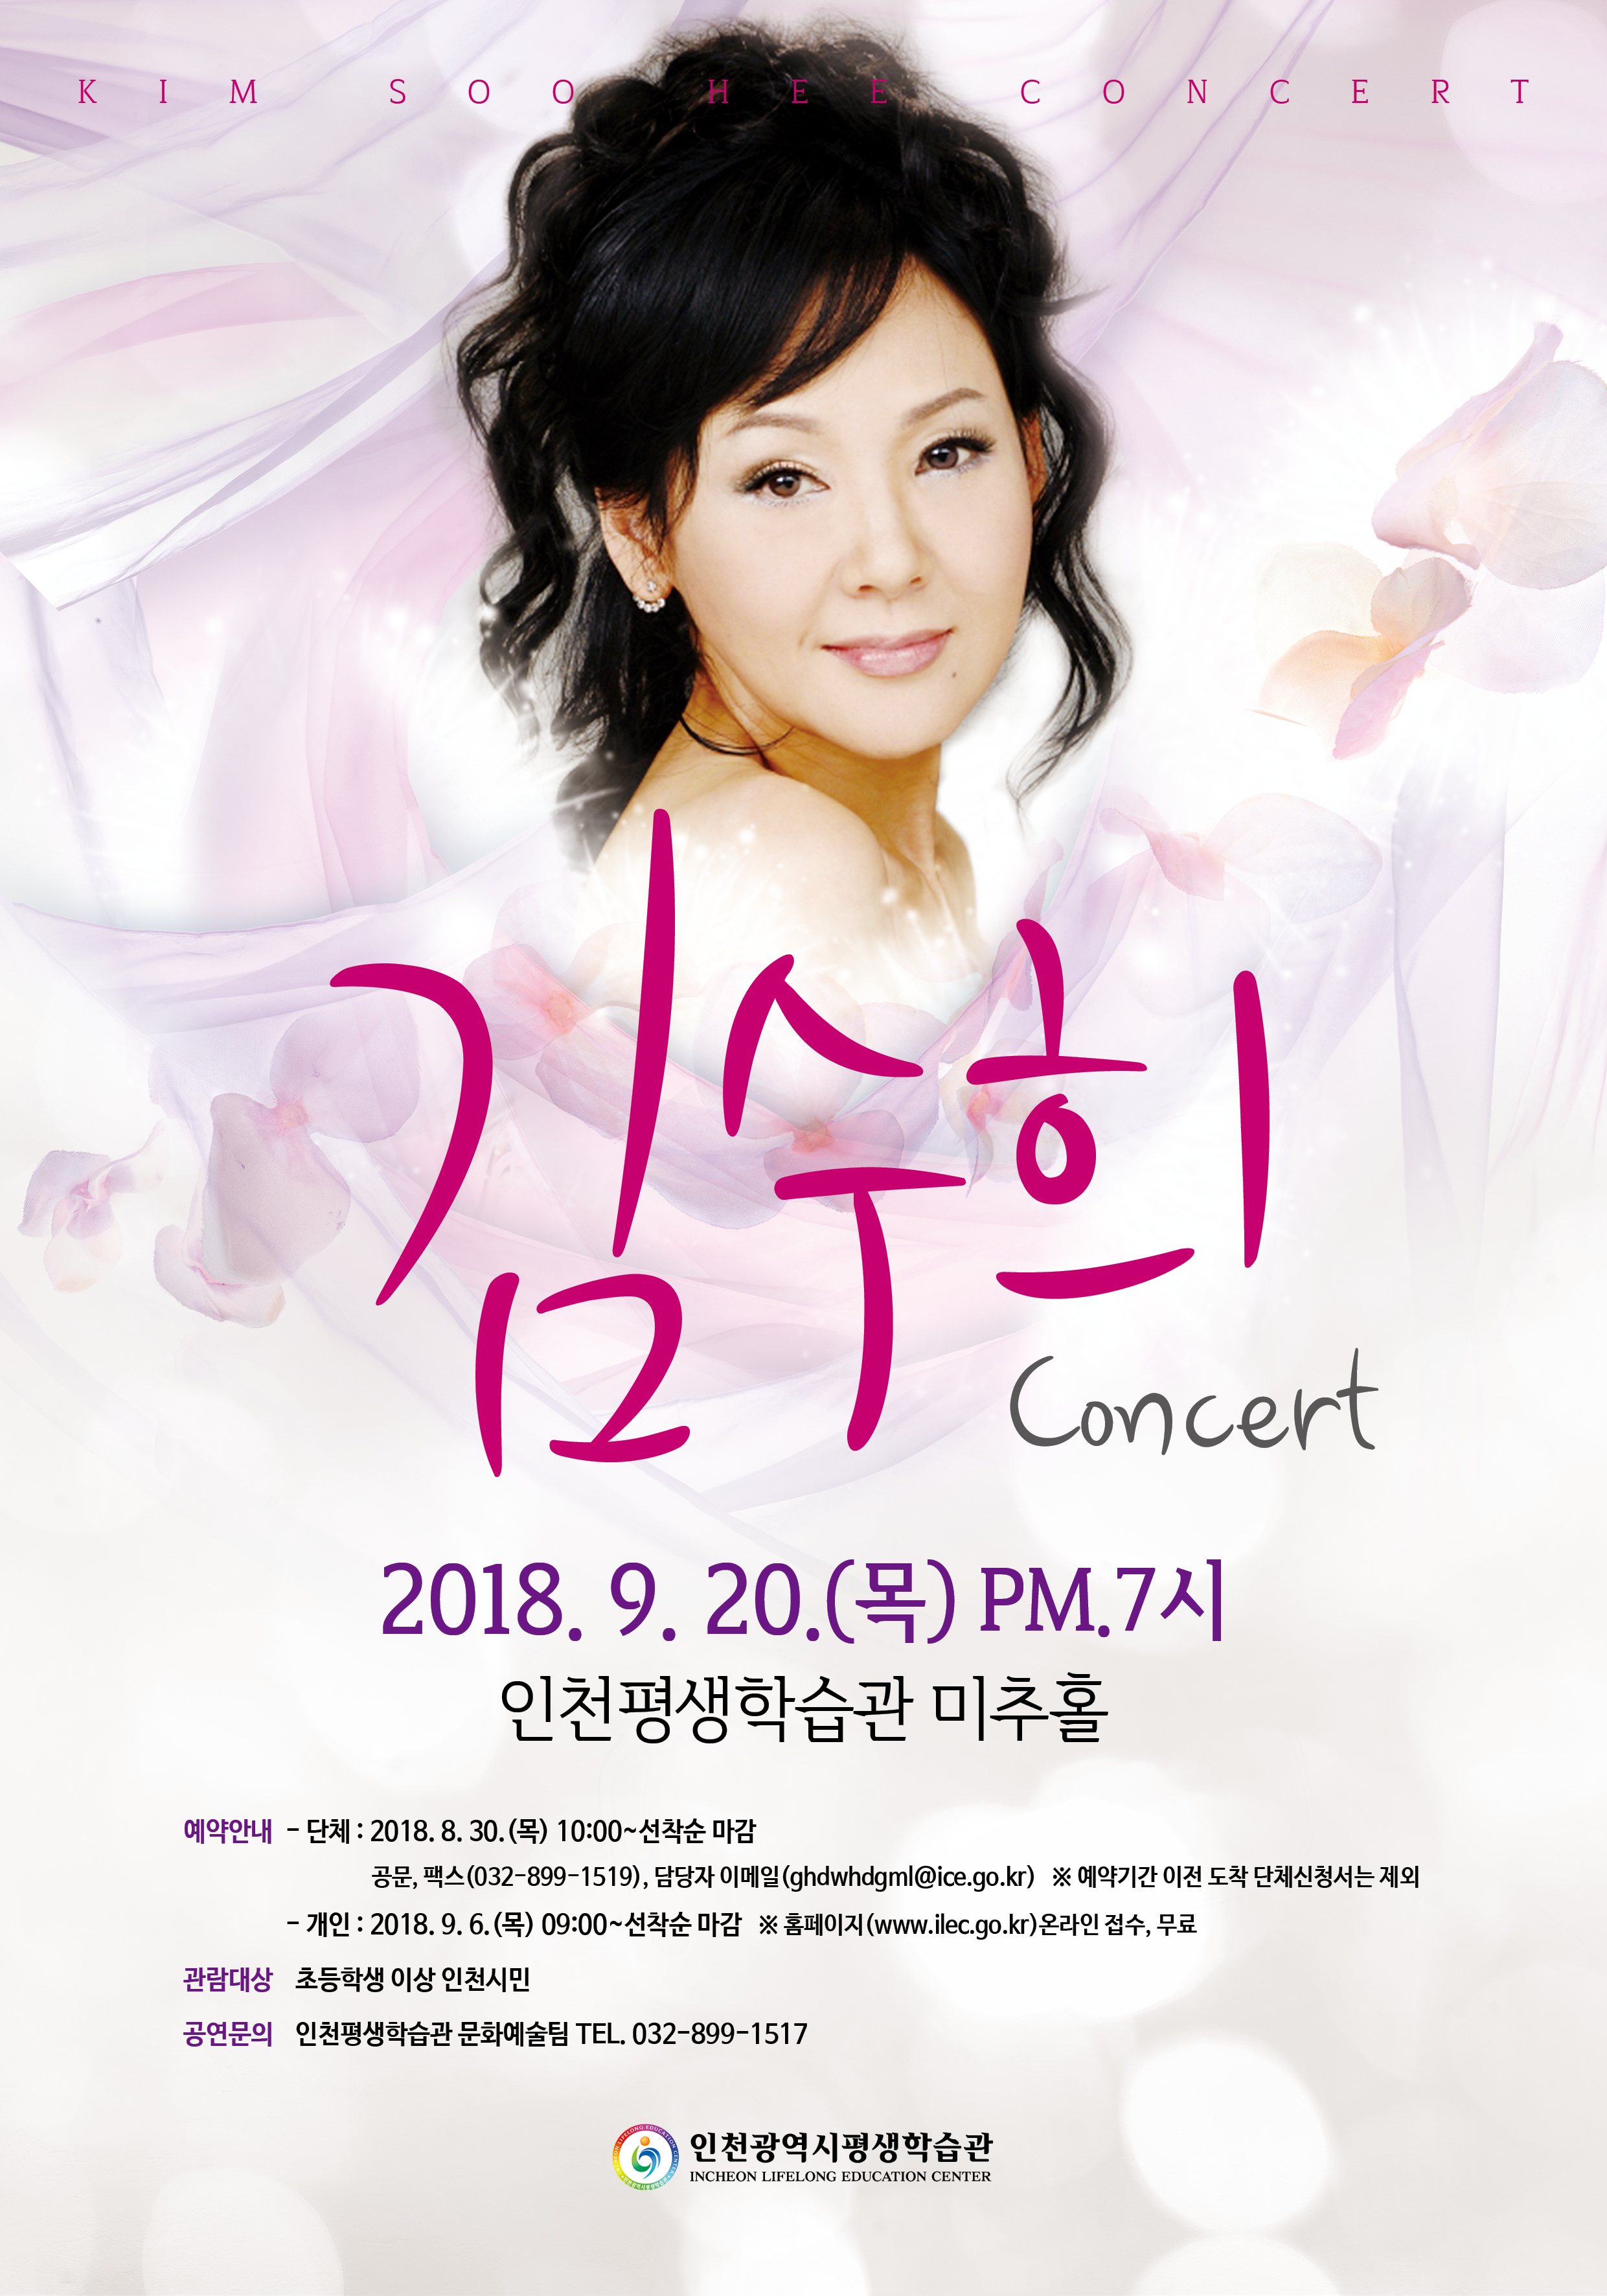 9월 김수희 콘서트 관련 포스터 - 자세한 내용은 본문참조